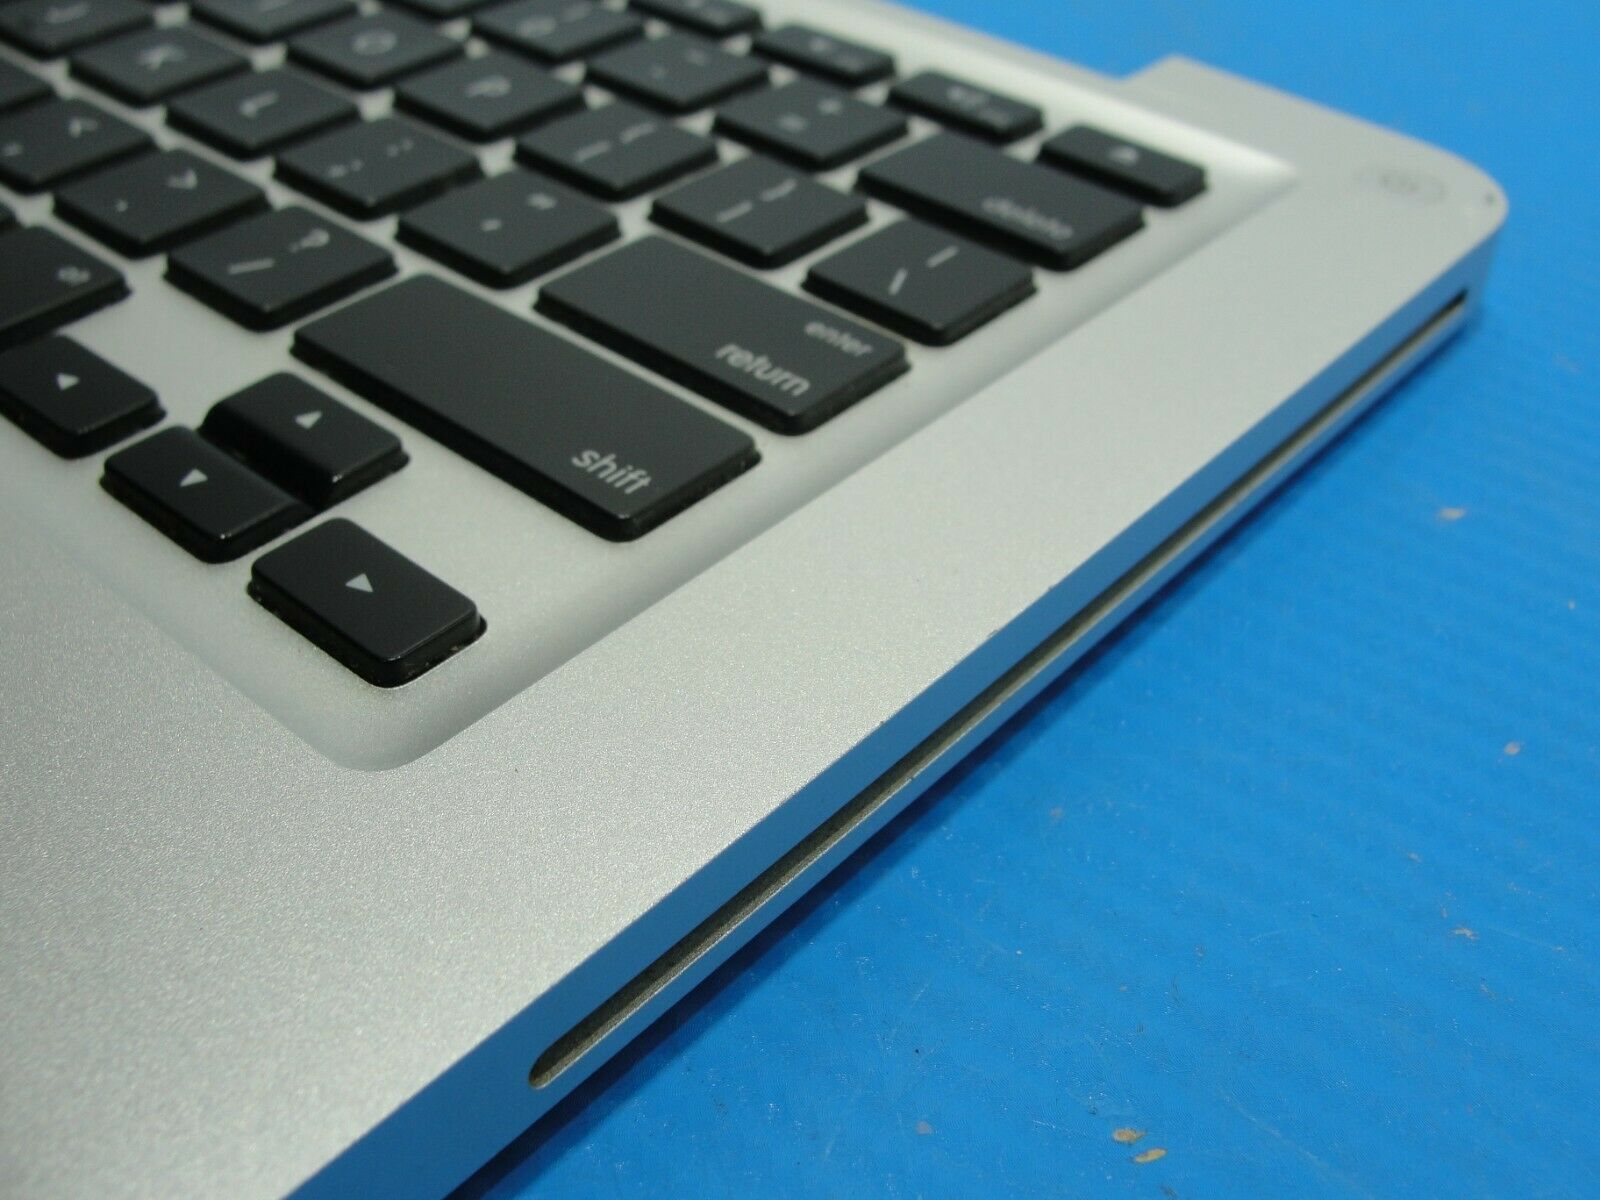 MacBook A1278 13